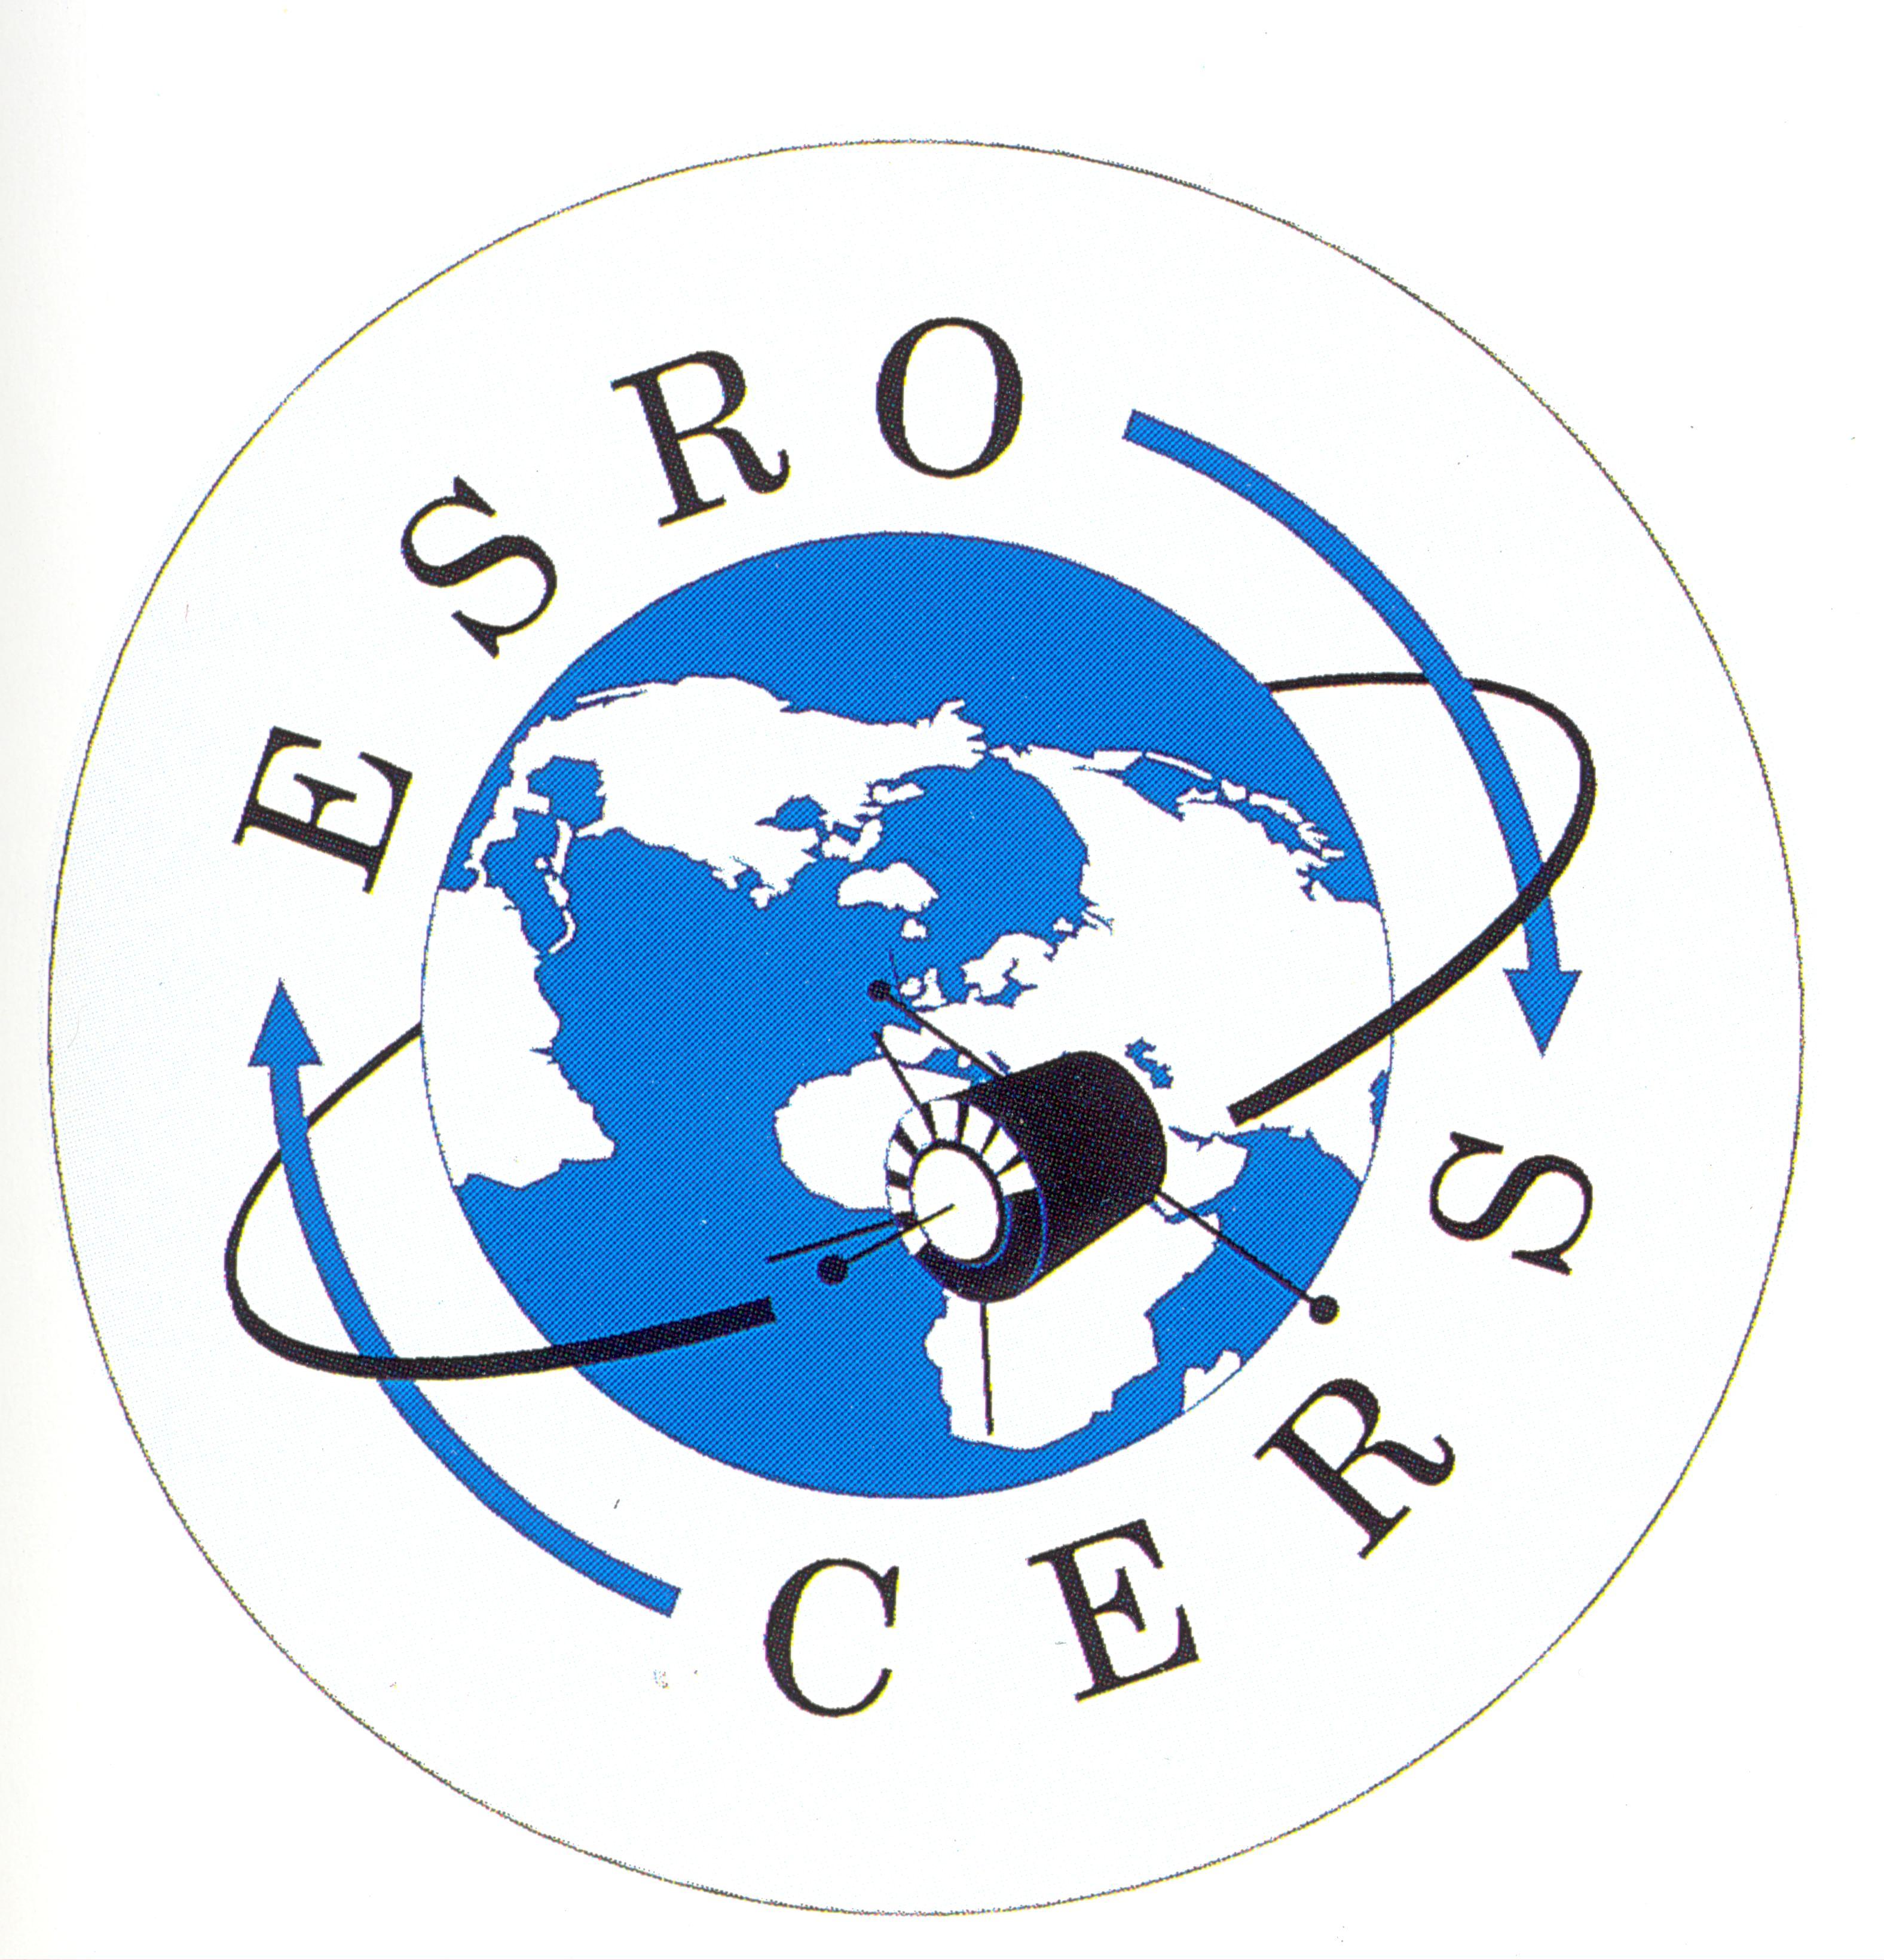 Space in Images - 2014 - 01 - ESRO logo3152 x 3280